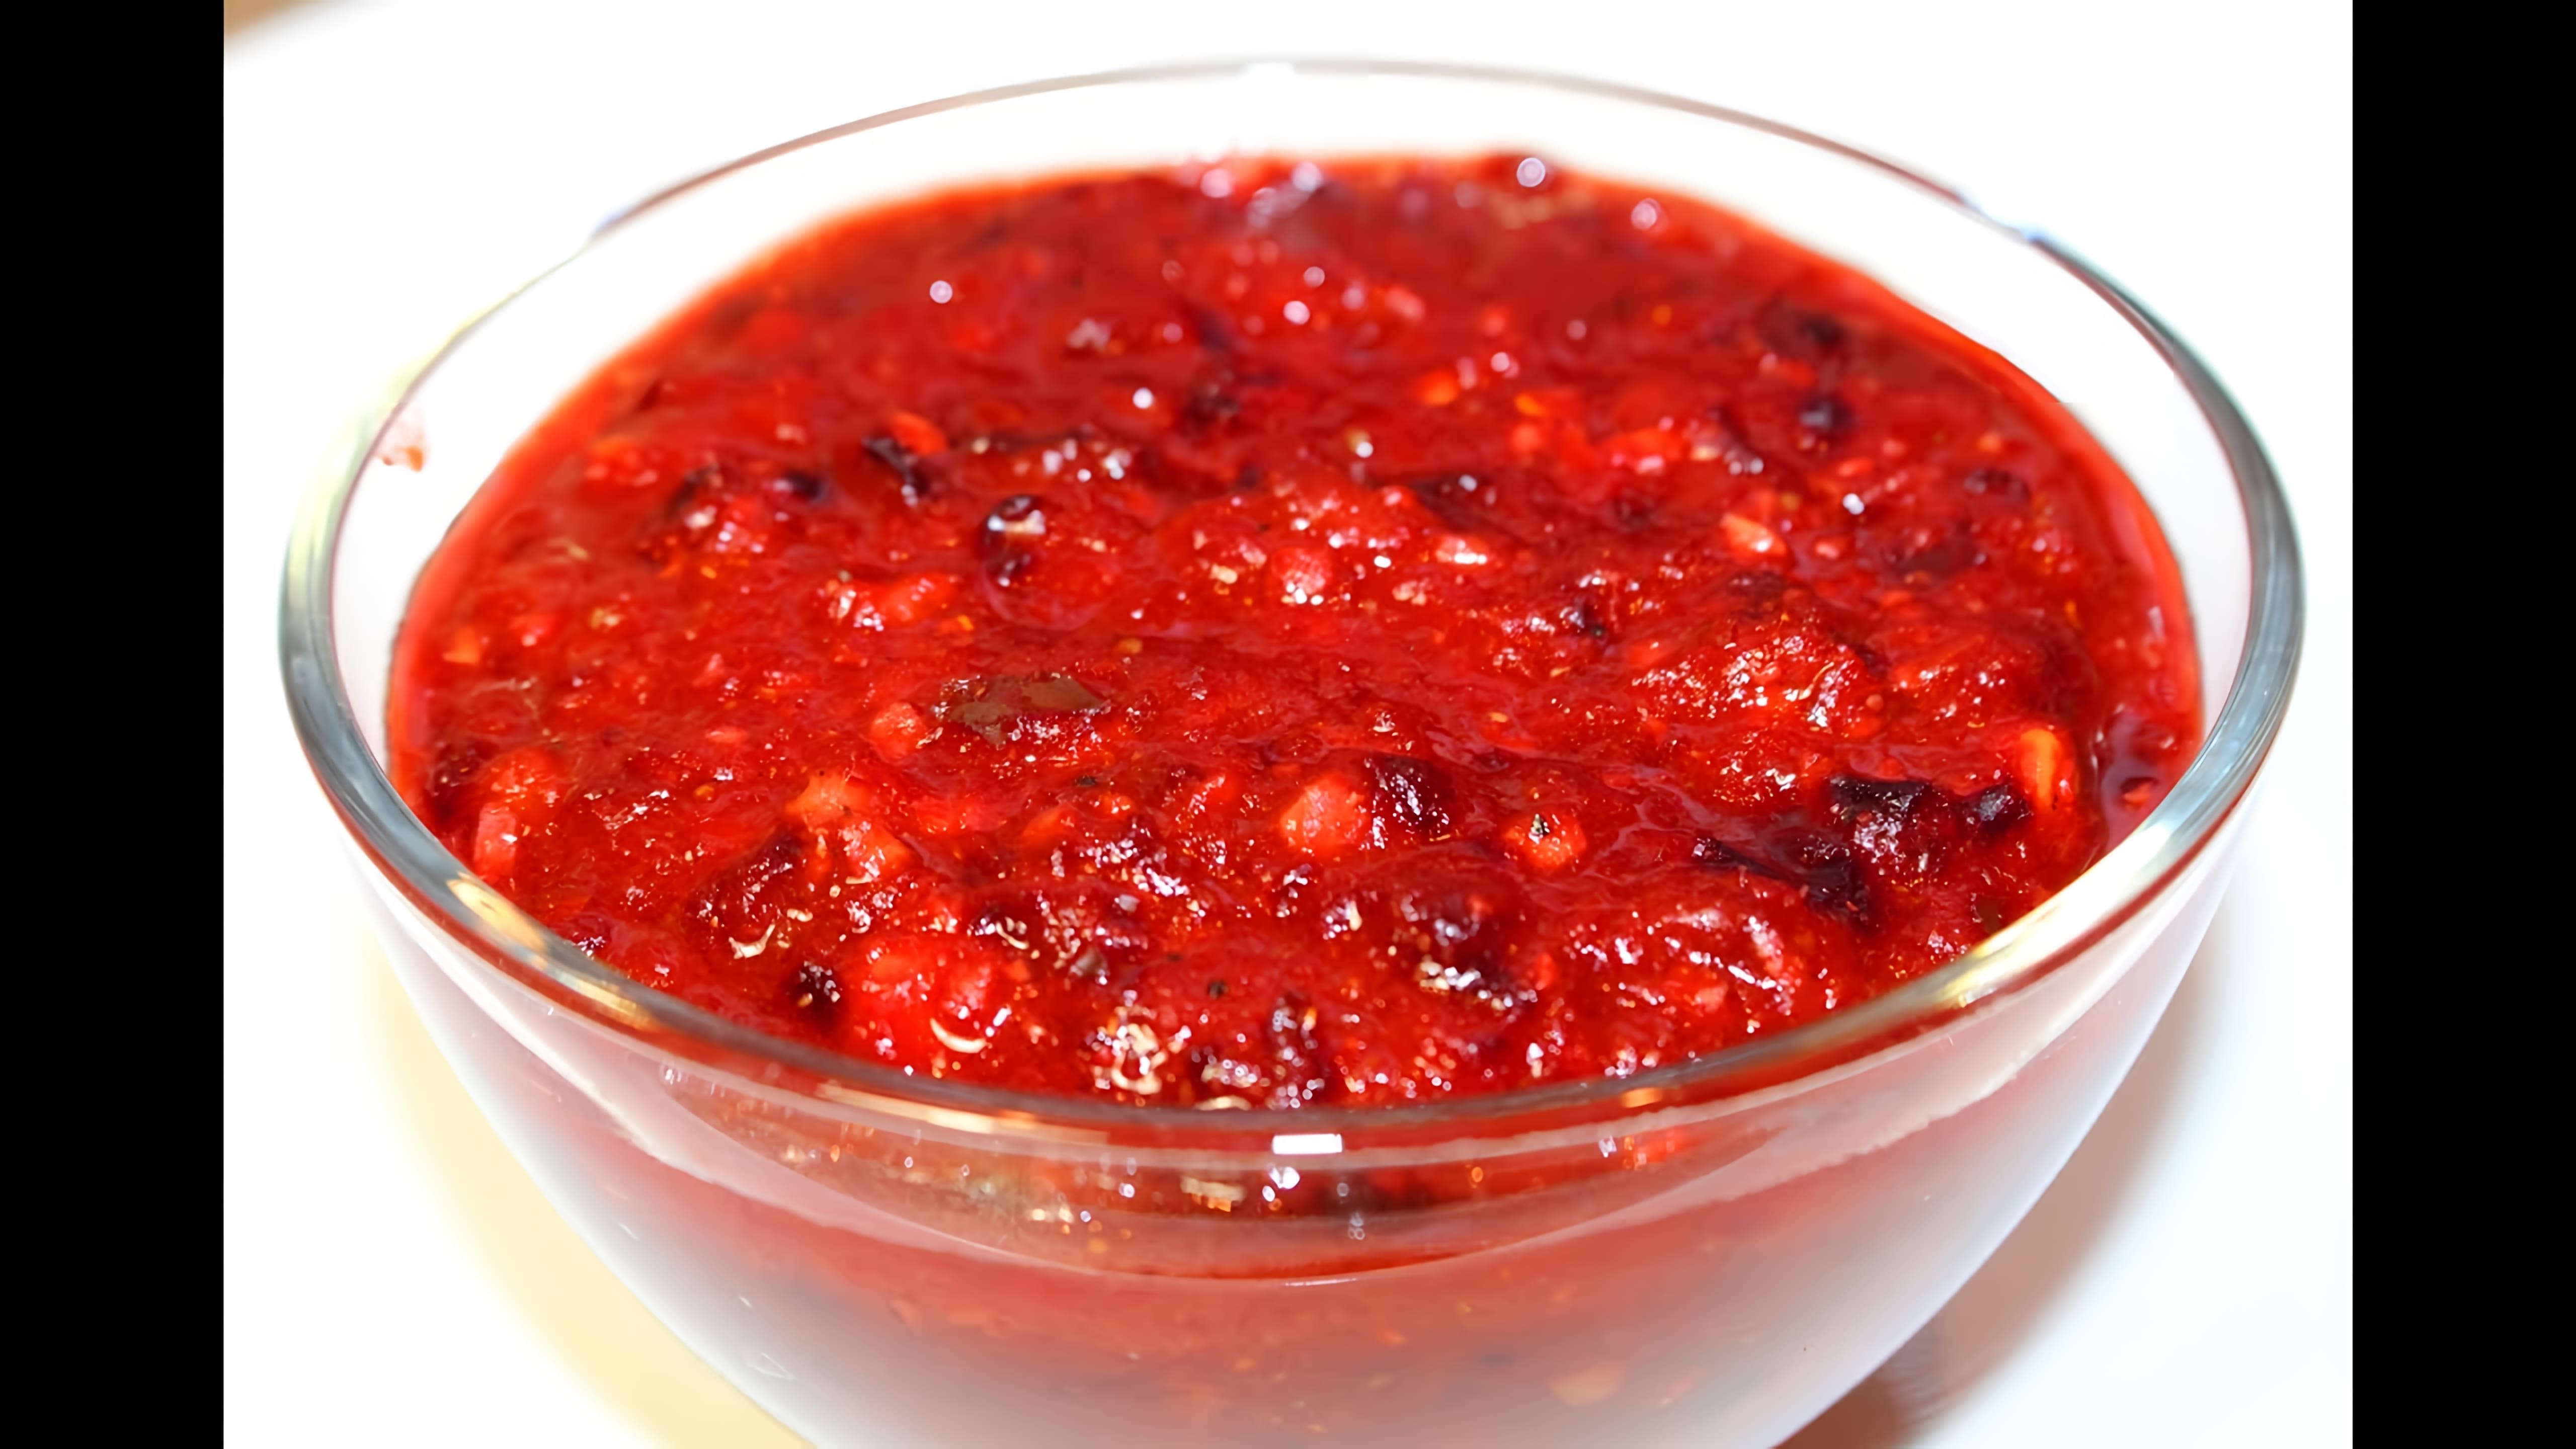 В данном видео демонстрируется процесс приготовления кетчупа из слив